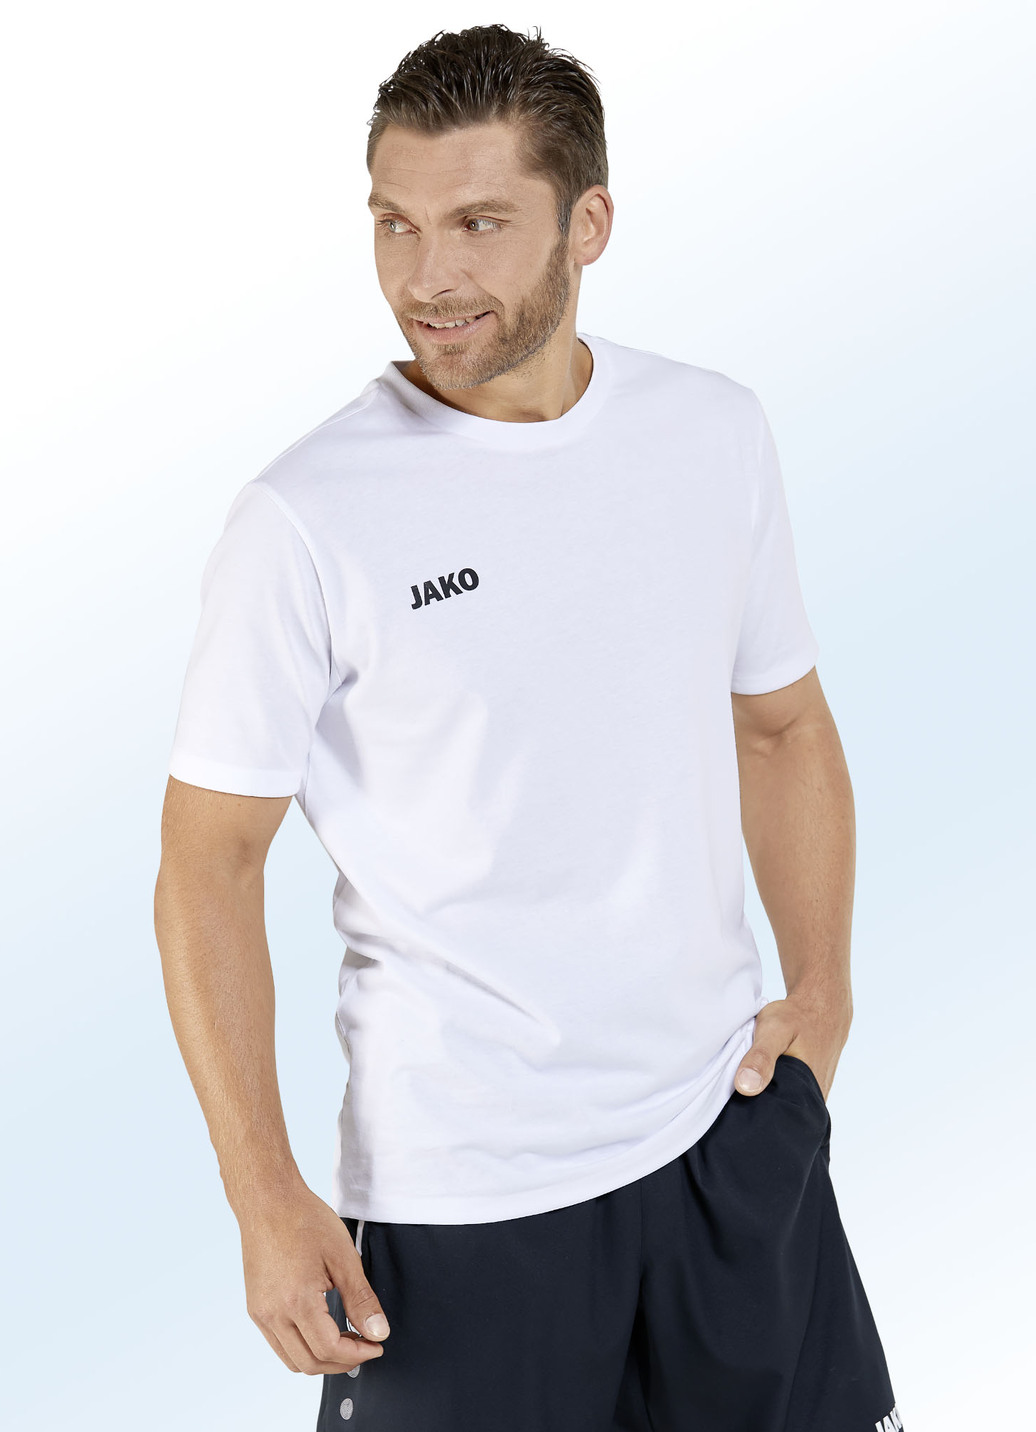 Doppelpack Shirt von "Jako" in 6 Farben, Größe 3XL (58/60), Weiss-Schwarz von Jako